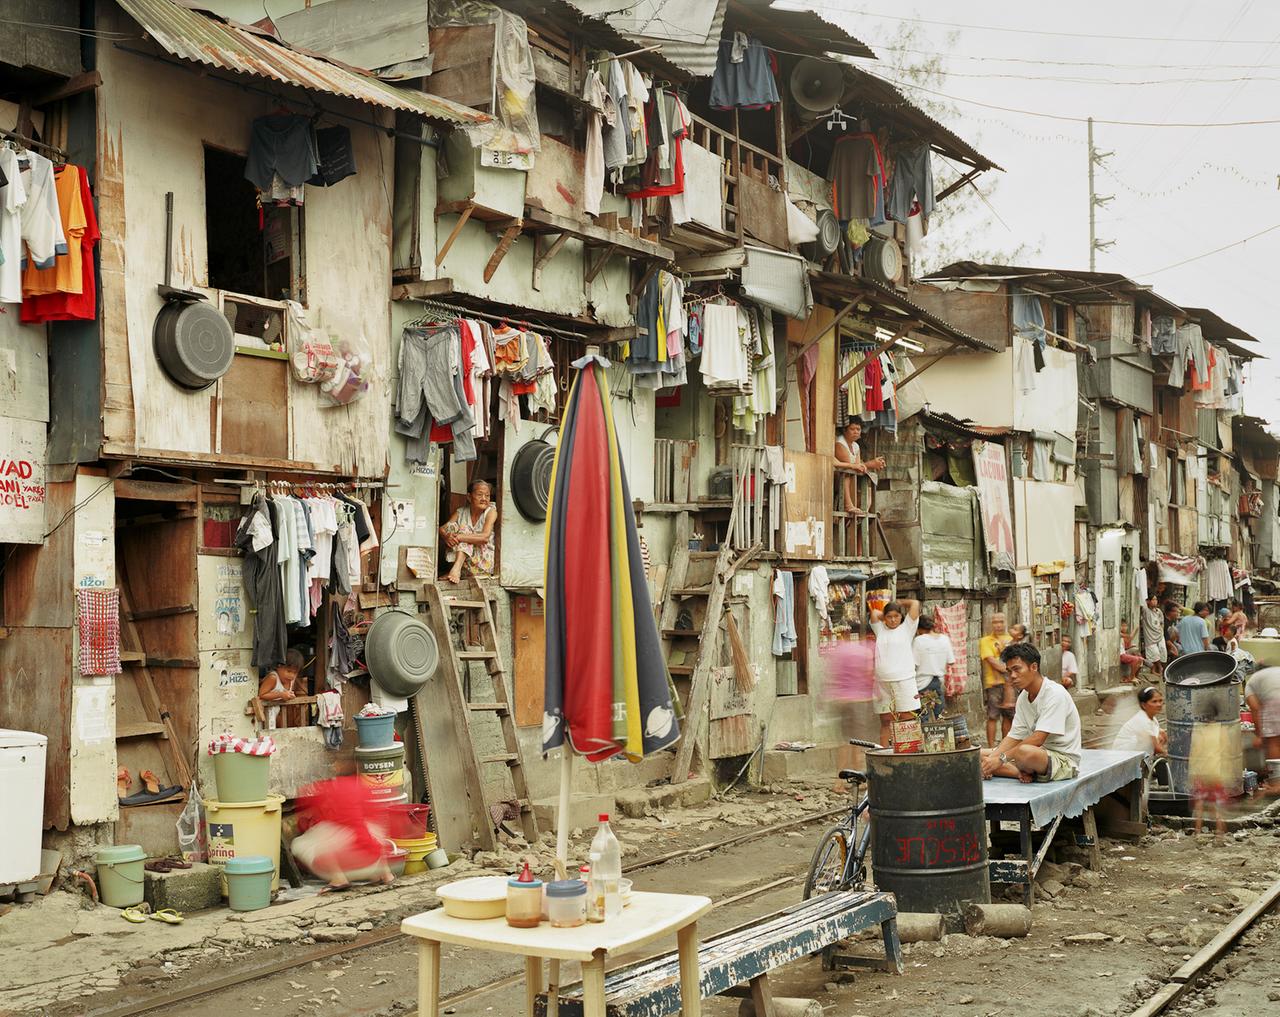 from the series:"The Raw and the Cooked", 2012. Von provisorischen Slumkonstruktionen bis hin zu den beinahe 50stöckigen Sozialbauten in Singapur untersucht Bialobrzeski aus distanzierter Perspektive sich rasant verändernde urbane Strukturen